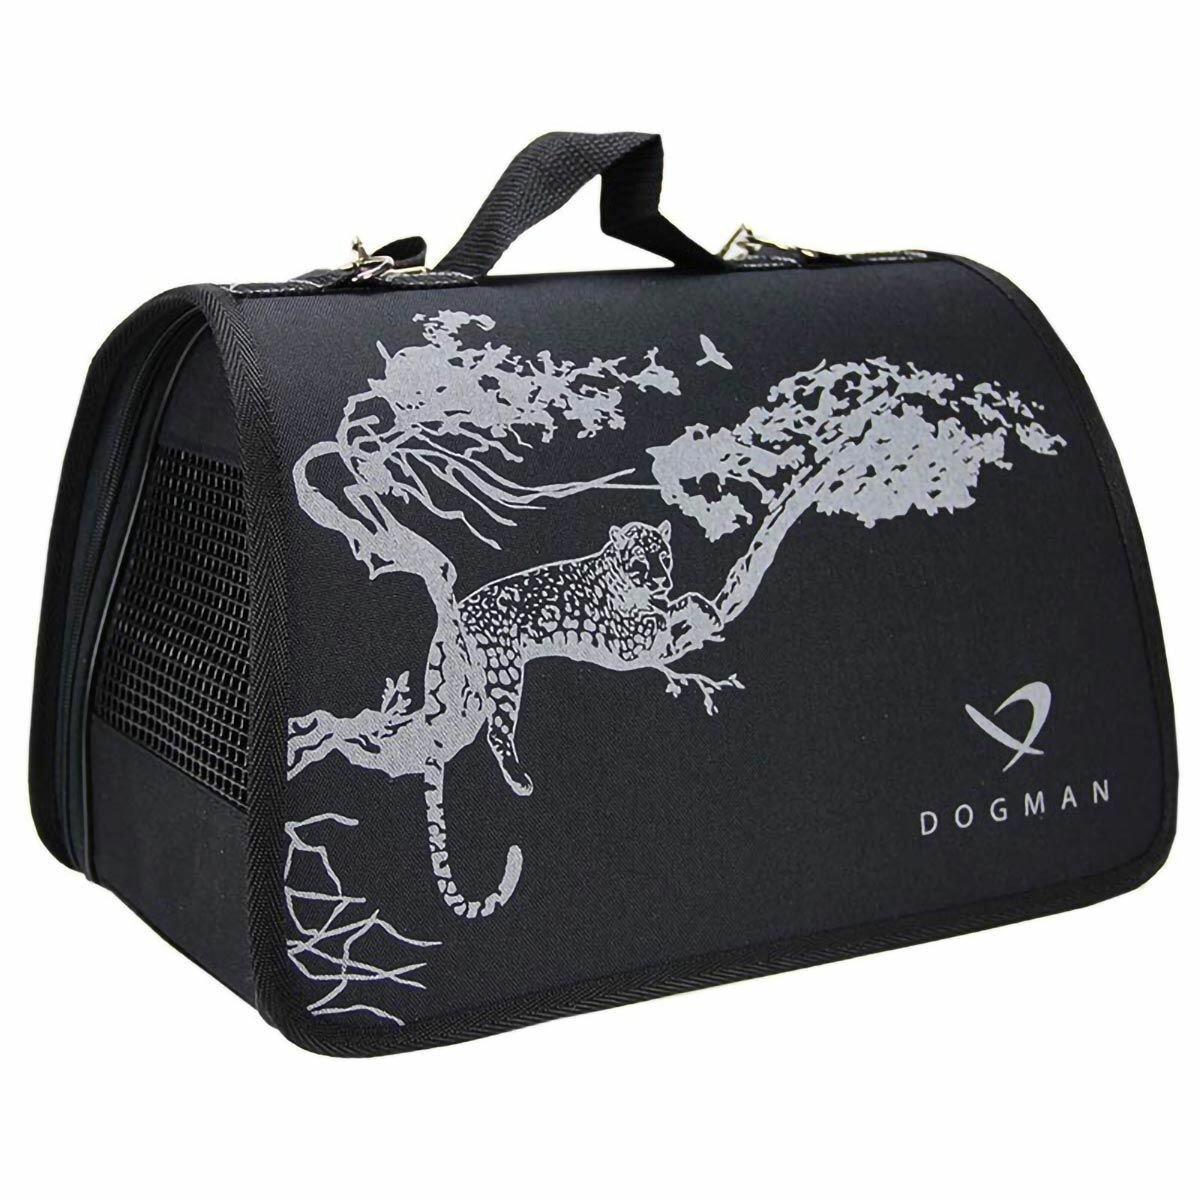 Переноска сумка DOGMAN Лира №2 для кошек и мелких пород собак, Сафари Черный, 40х25х24см